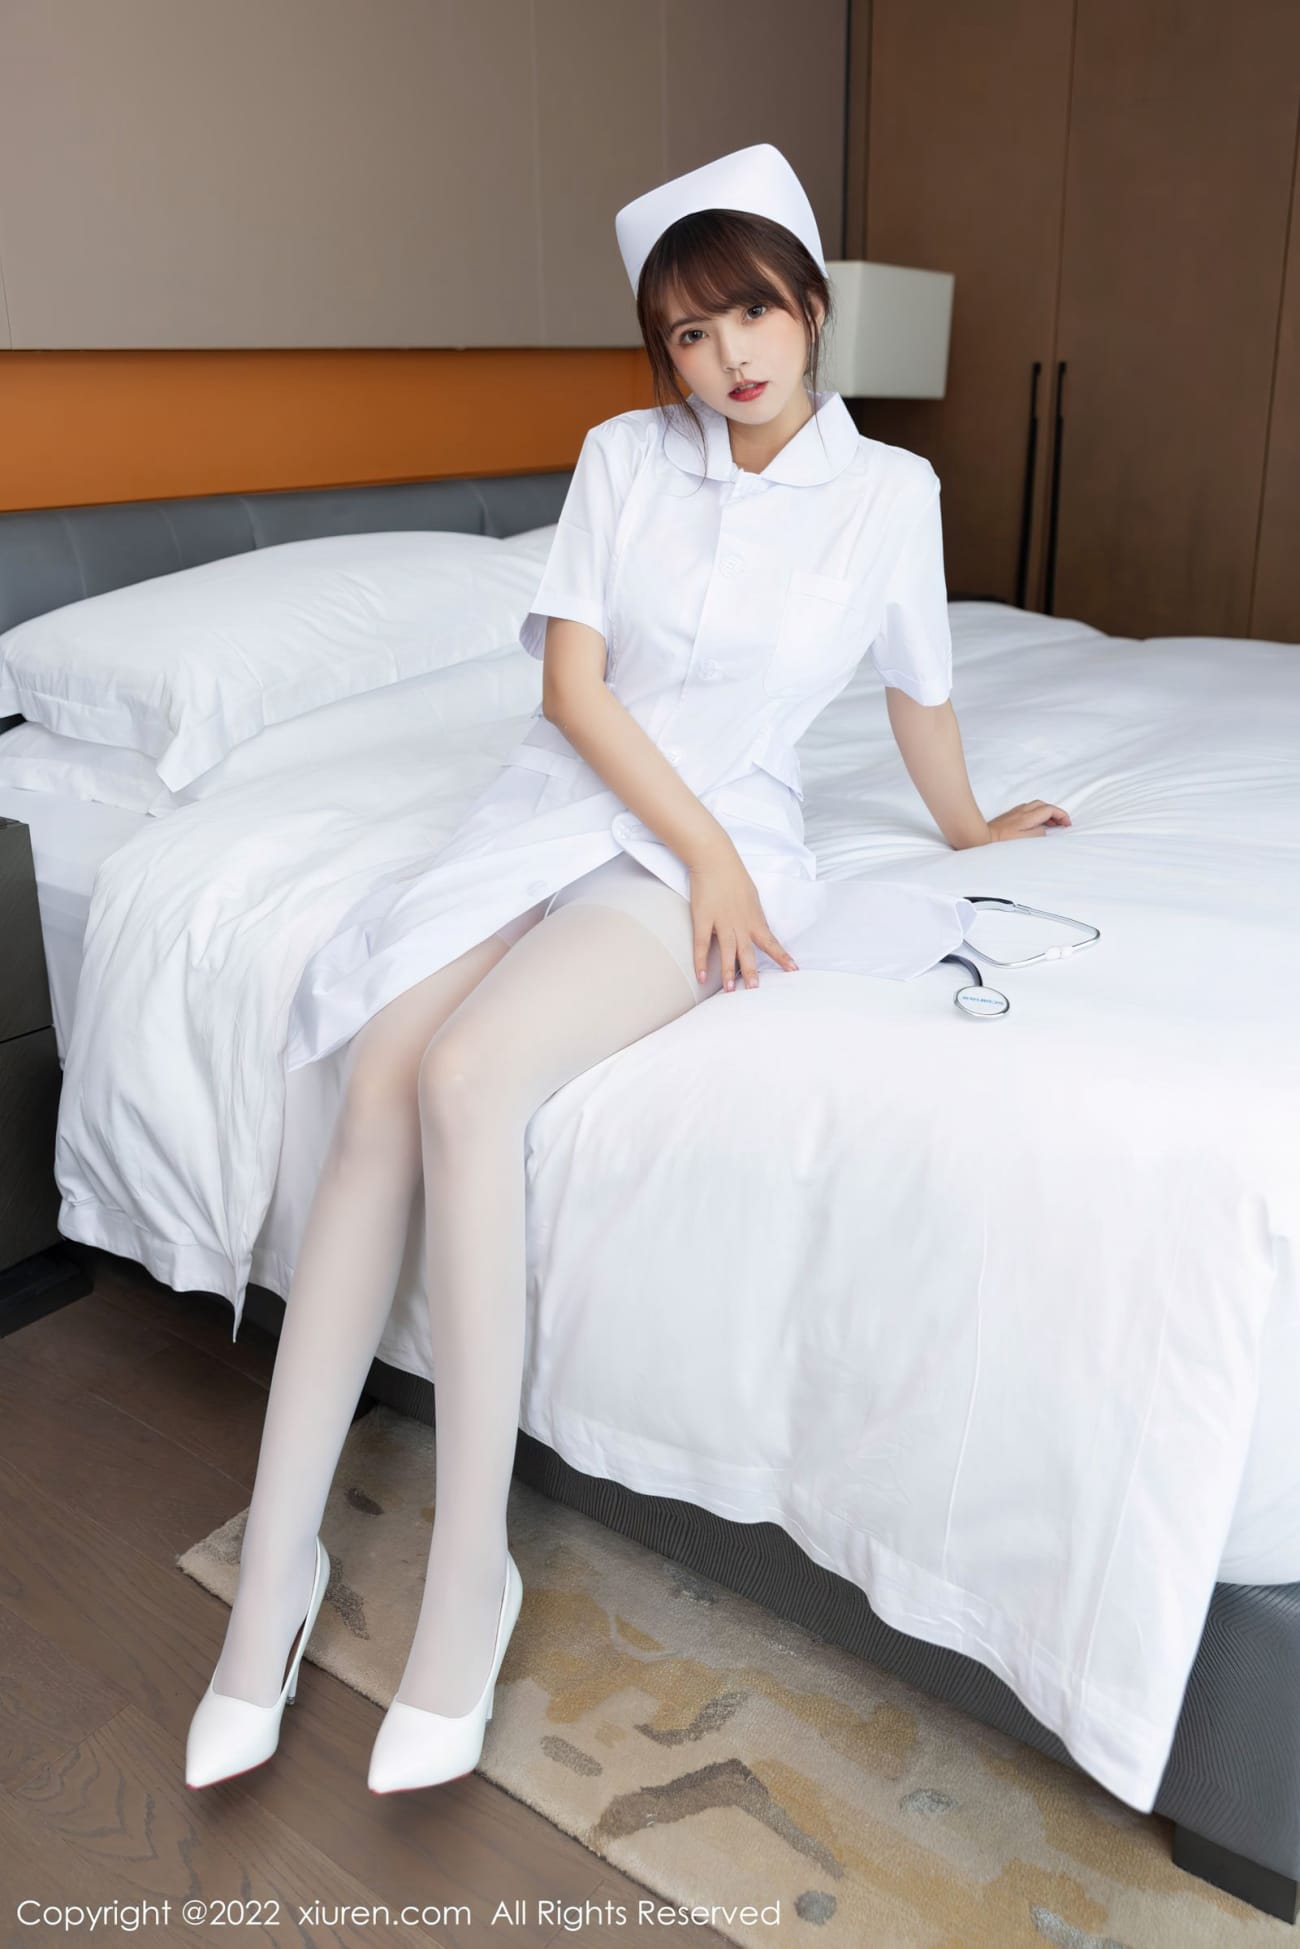 模特张思允Nice白色护士服搭配丝袜系列性感写真